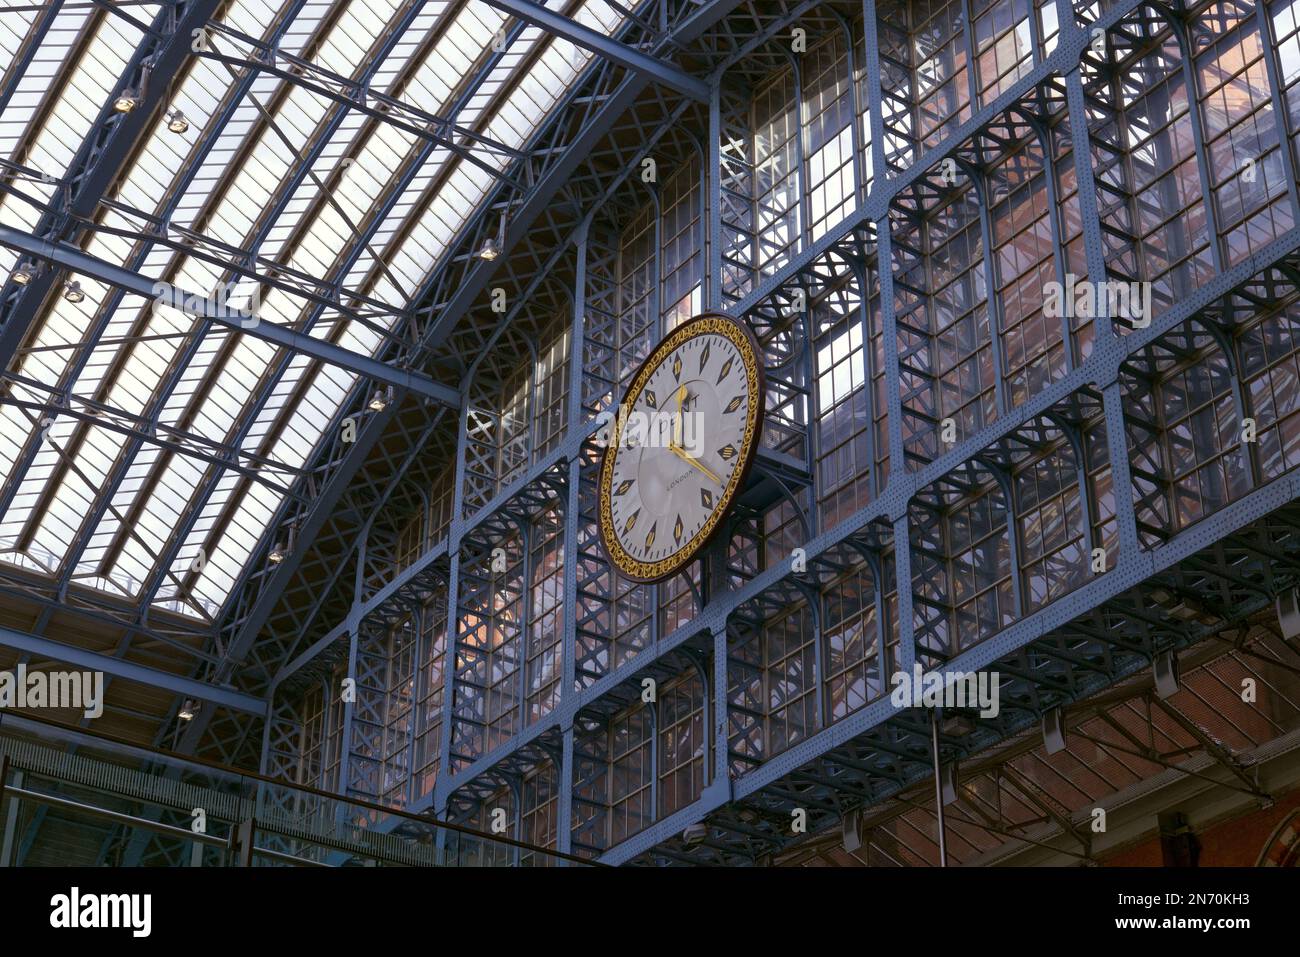 St Pancras International Railway Station, Londra, Inghilterra, Regno Unito - Orologio con tetto e piattaforma in vetro e ferro Foto Stock